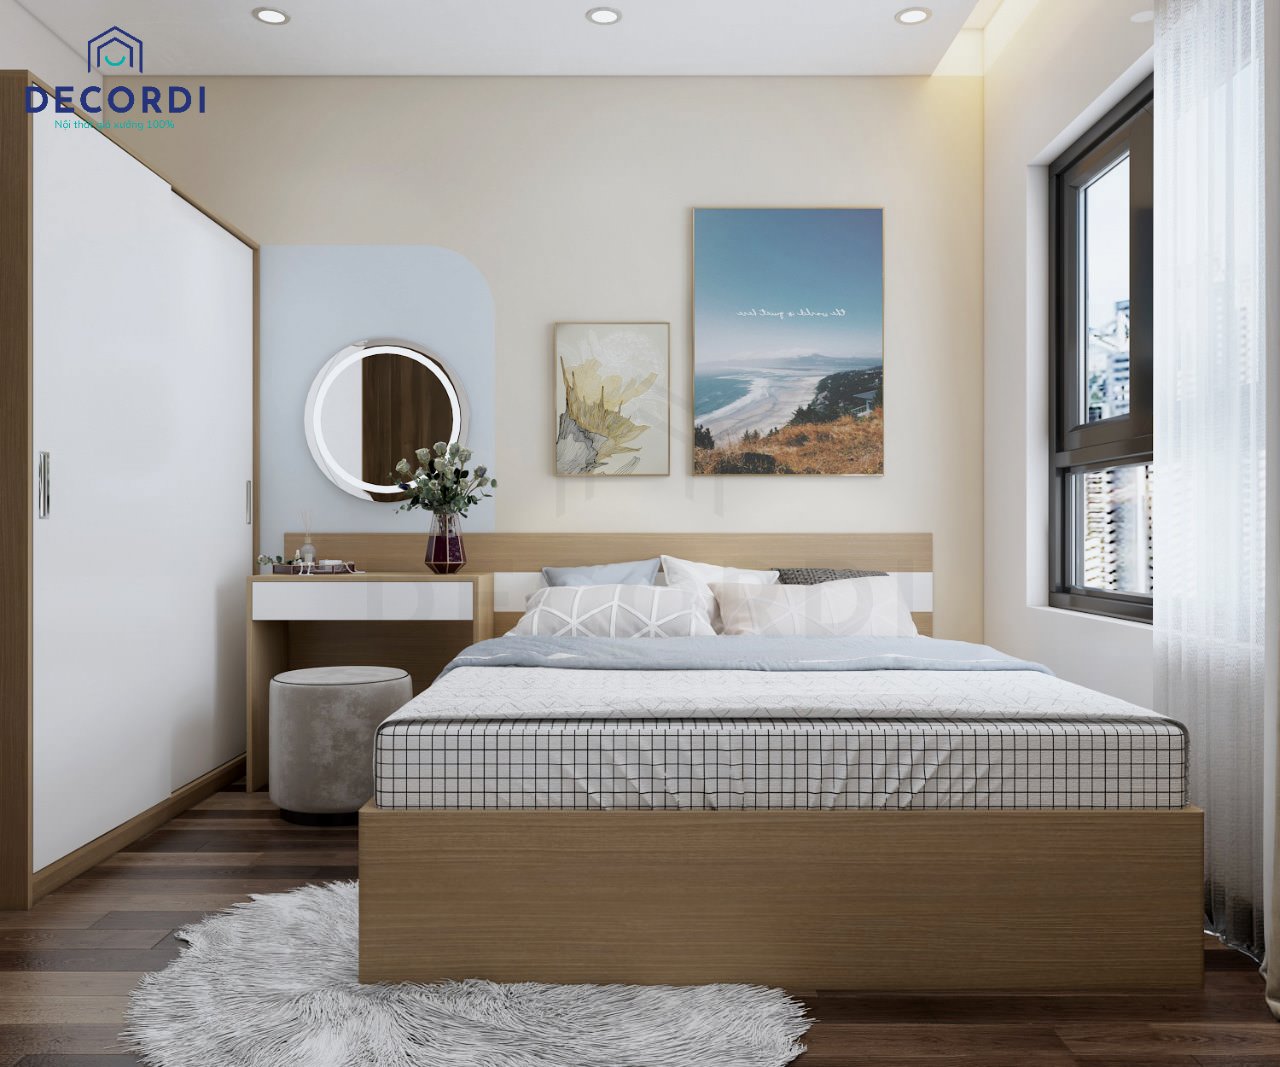 Thiết kế phòng ngủ nhỏ với gam màu trung tính nhẹ nhàng, ấm cúng